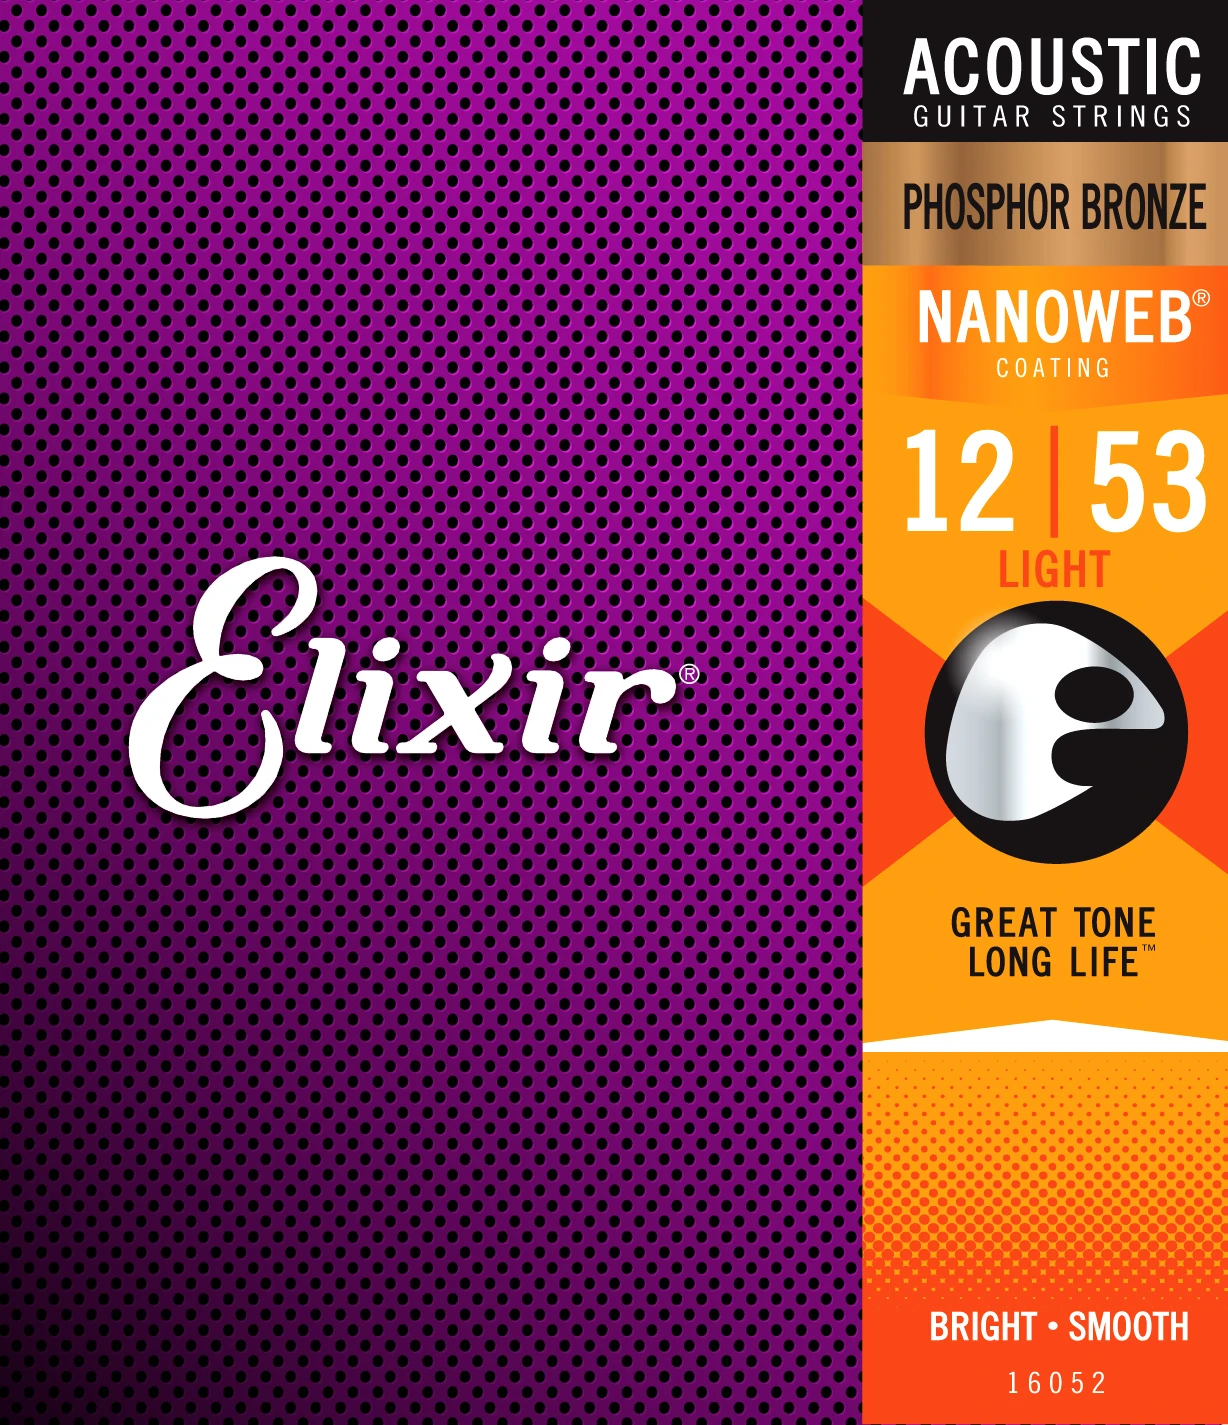 Elixir струнная акустическая Фосфорная бронза с покрытием Nanoweb, все модели - Цвет: 16052	012-053